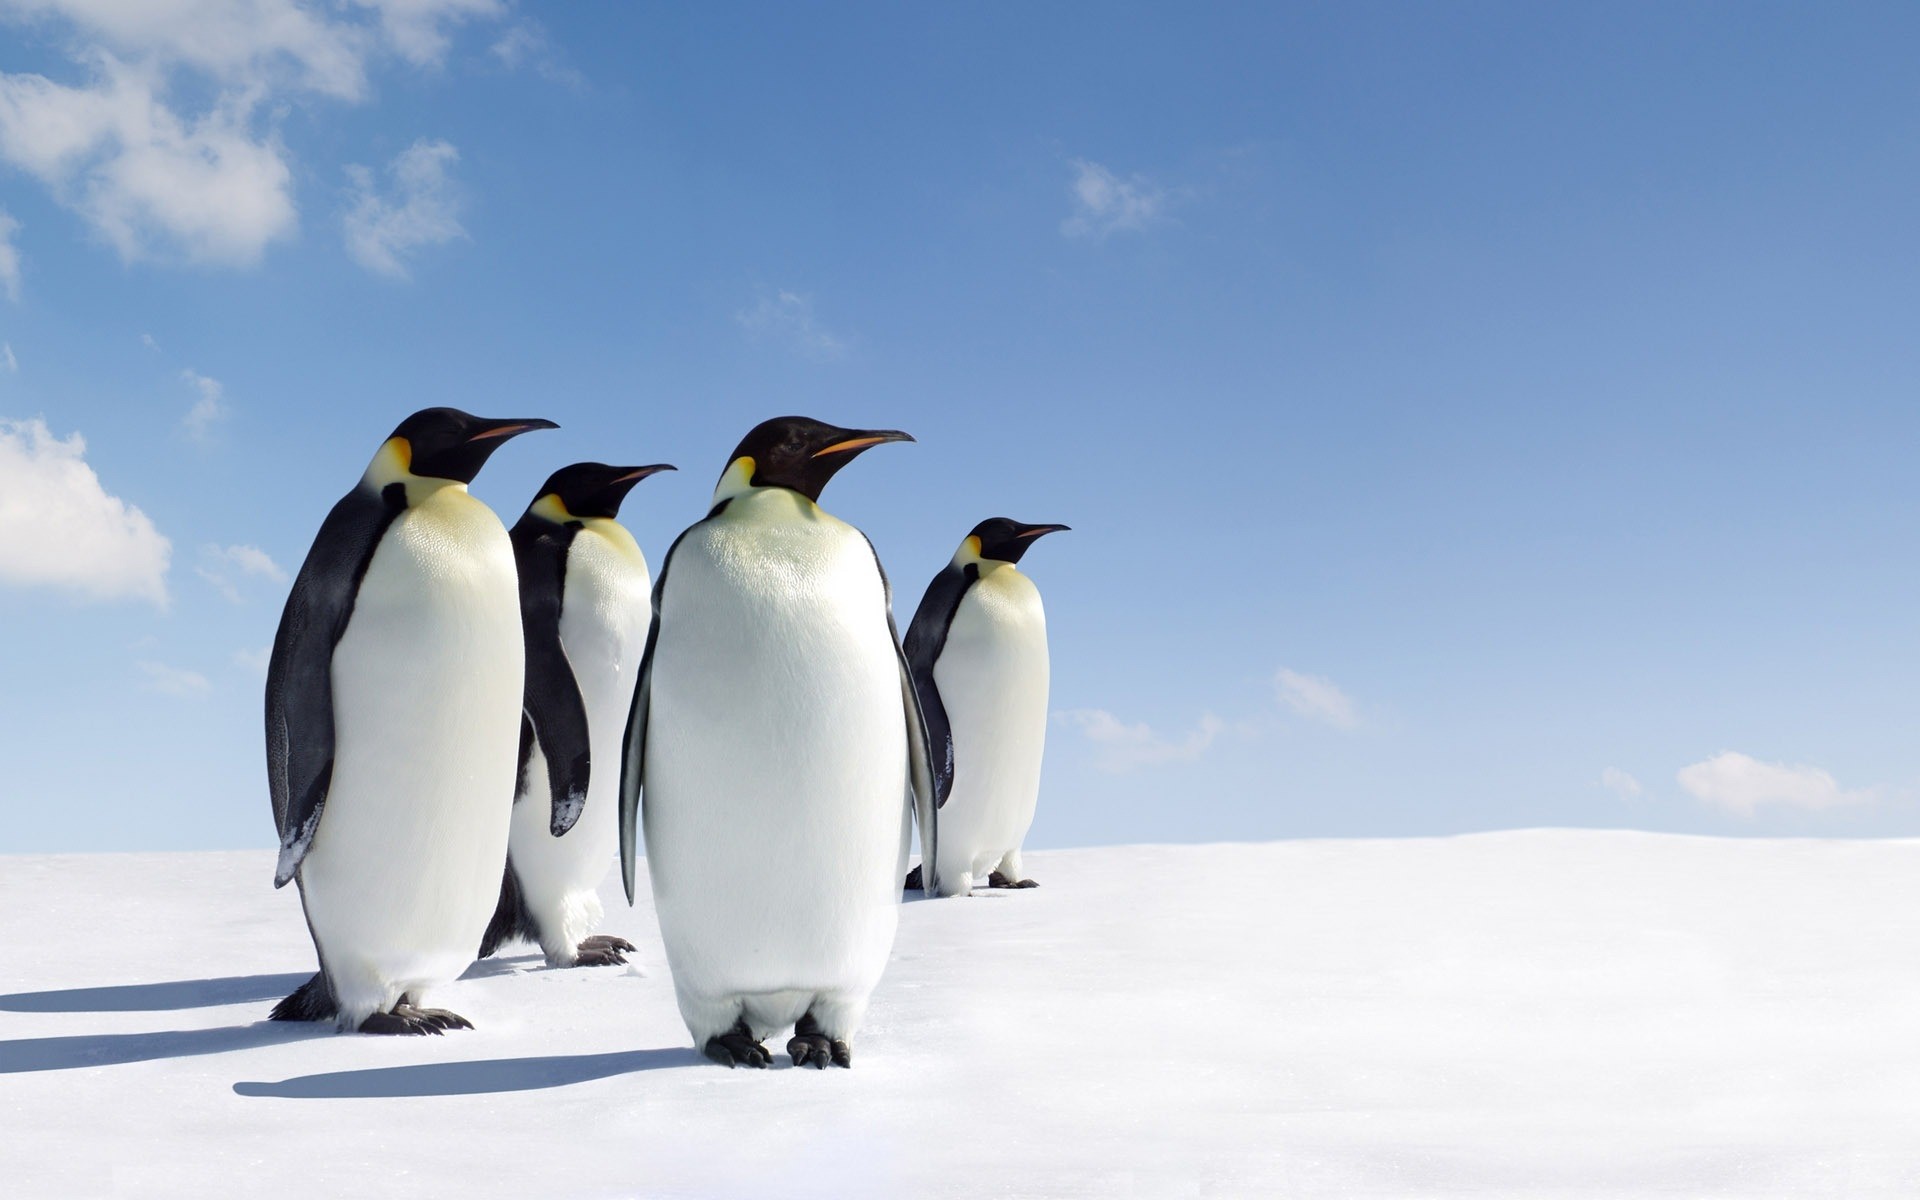 животные снег морозный птица зима дикой природы лед холодная пингвины природа на открытом воздухе